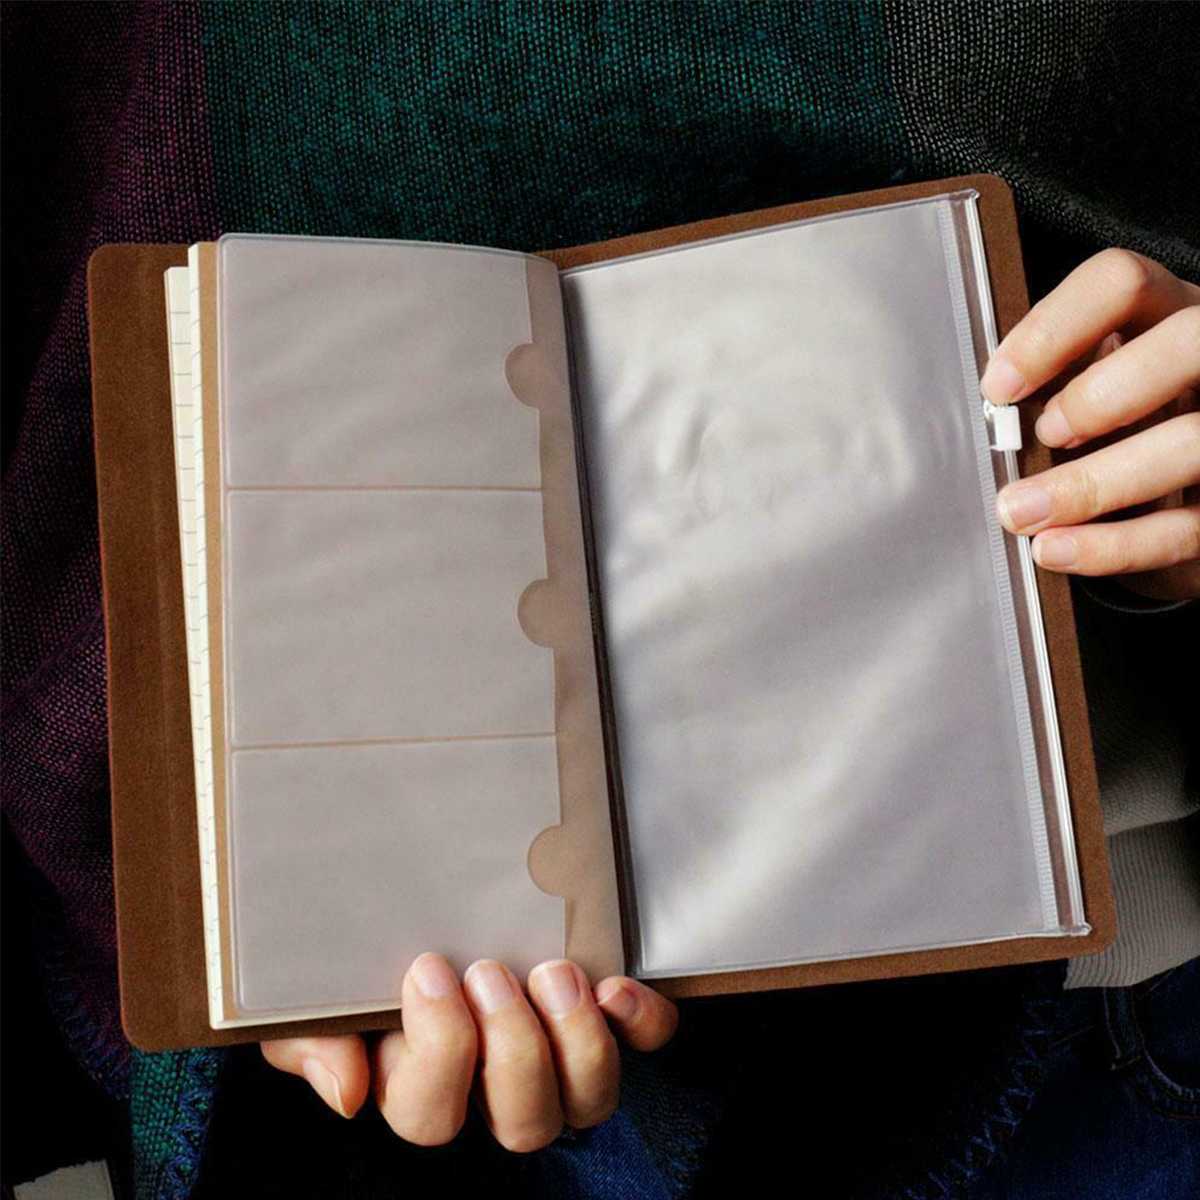 20 x 12cm a6 indgraveret dagbog til læderbog til min kære barnebarn elsker bedstemor indgraveret notesbogdagbog